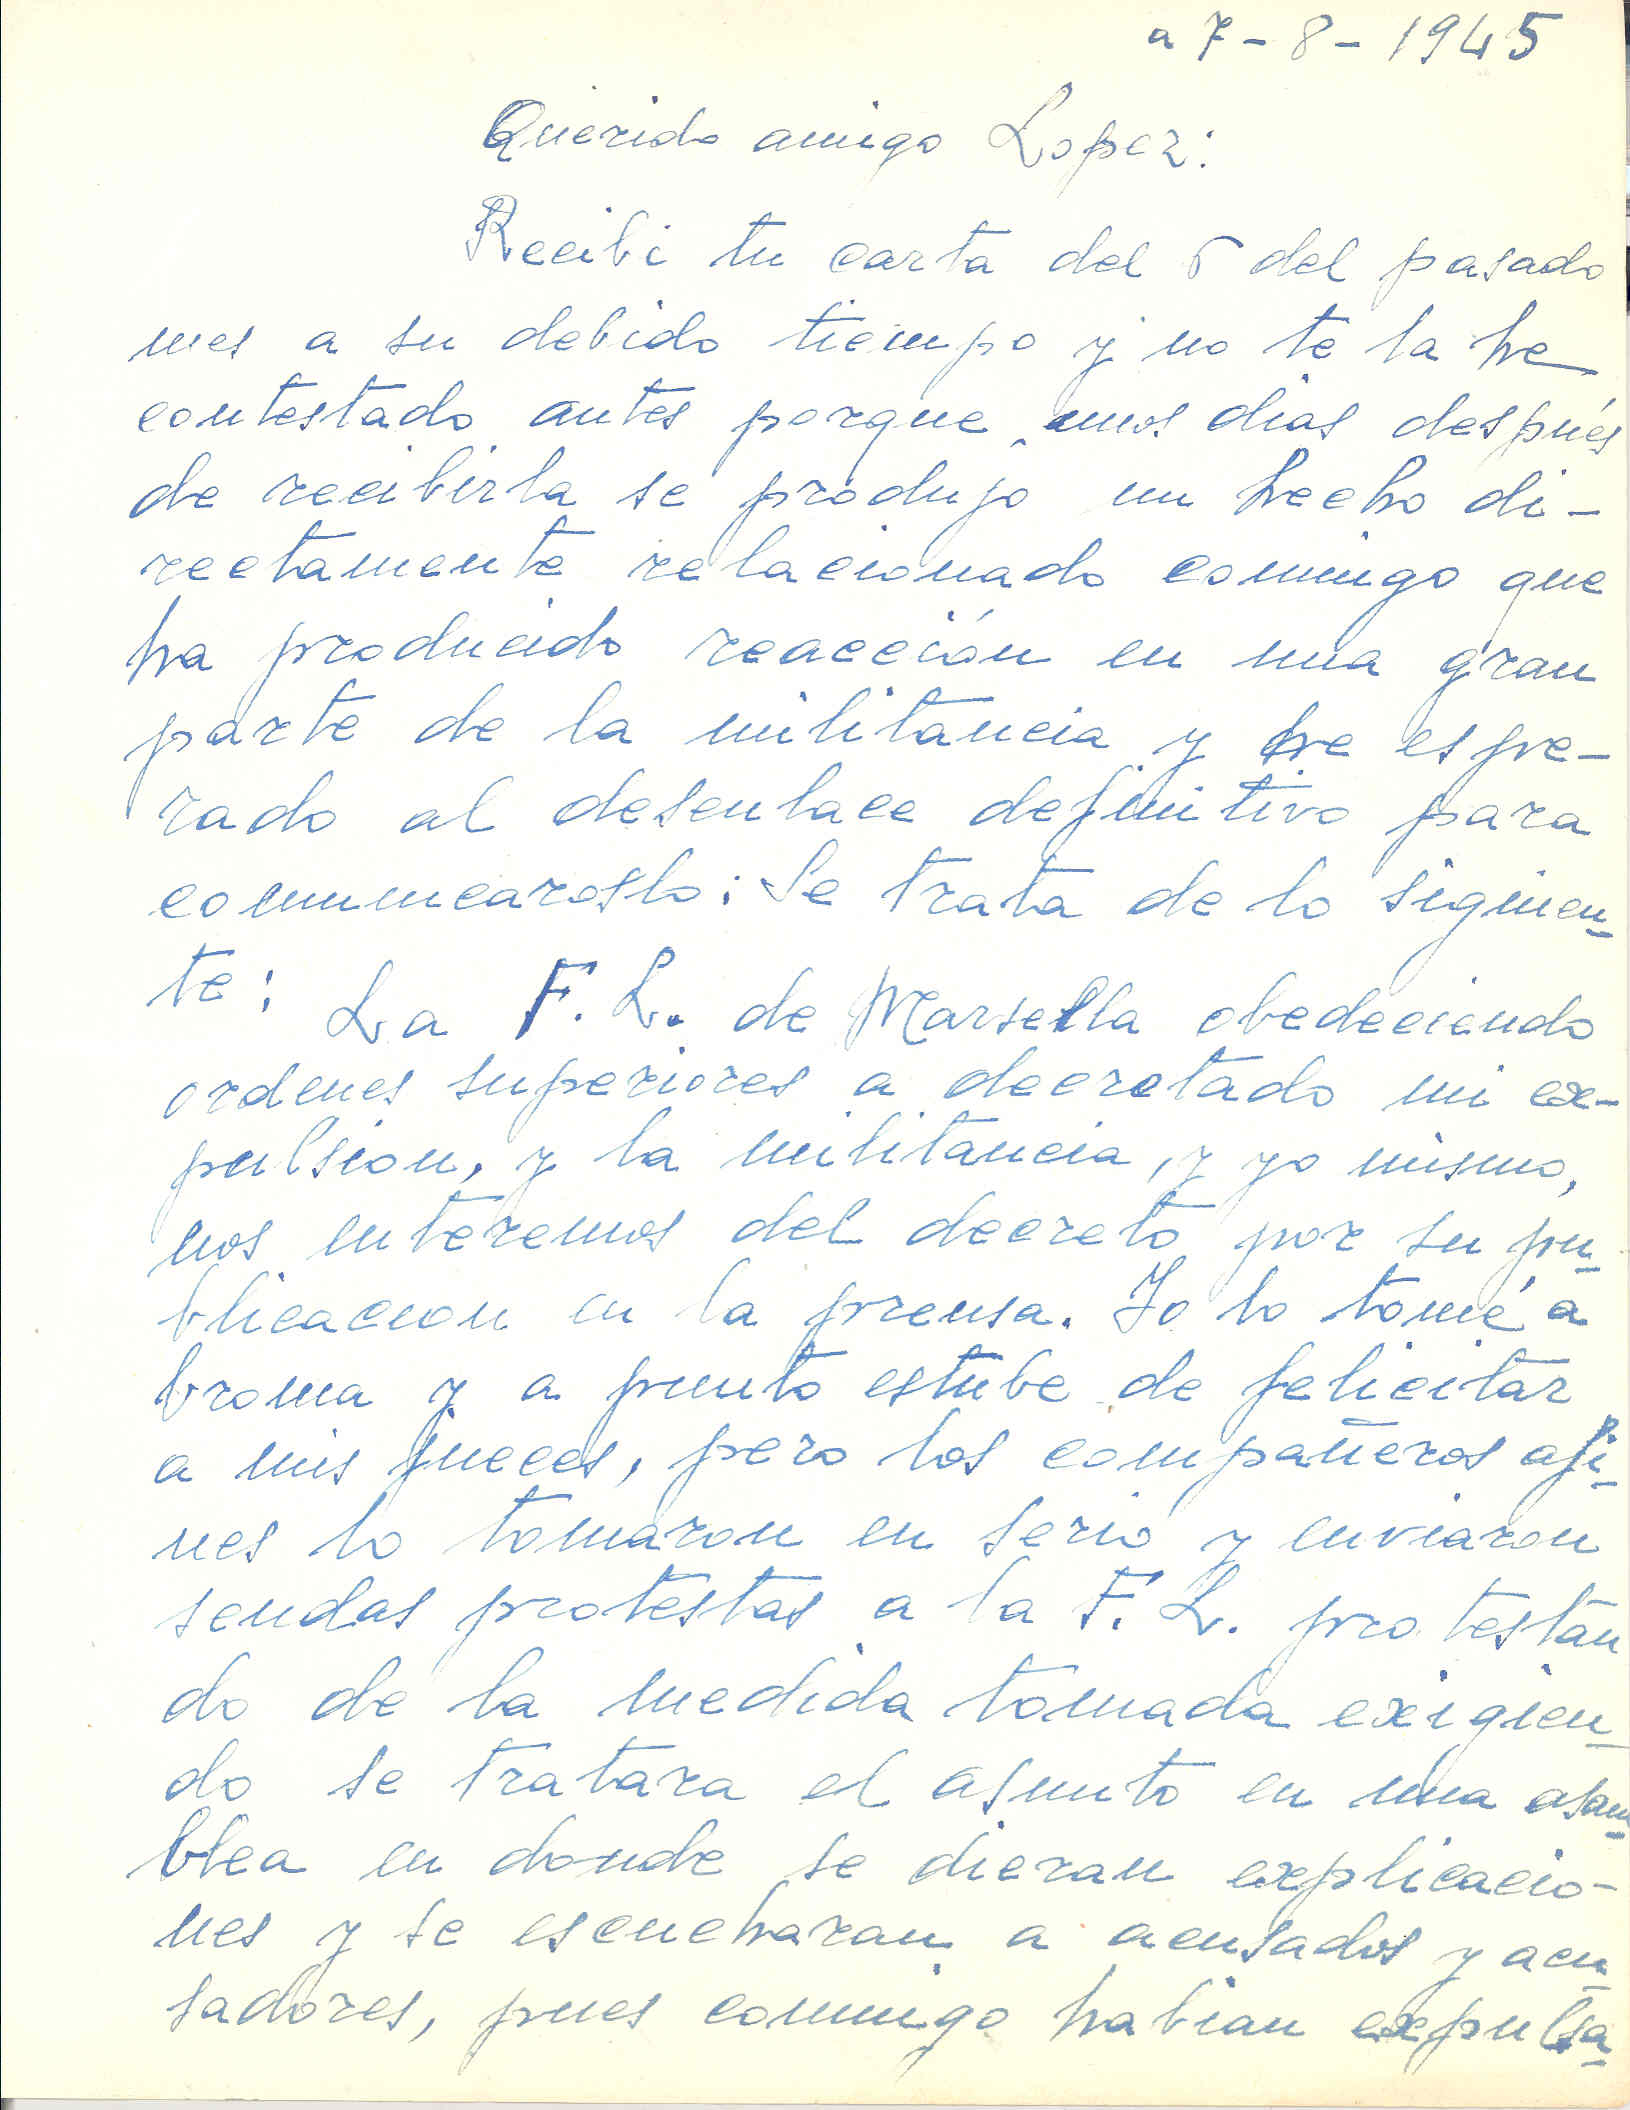 Carta de González Marín en la que anuncia a López que la Federación Local de Marsella decretó su expulsión y la de otros compañeros por órdenes superiores y la repercusión de las mismas entre la militancia local